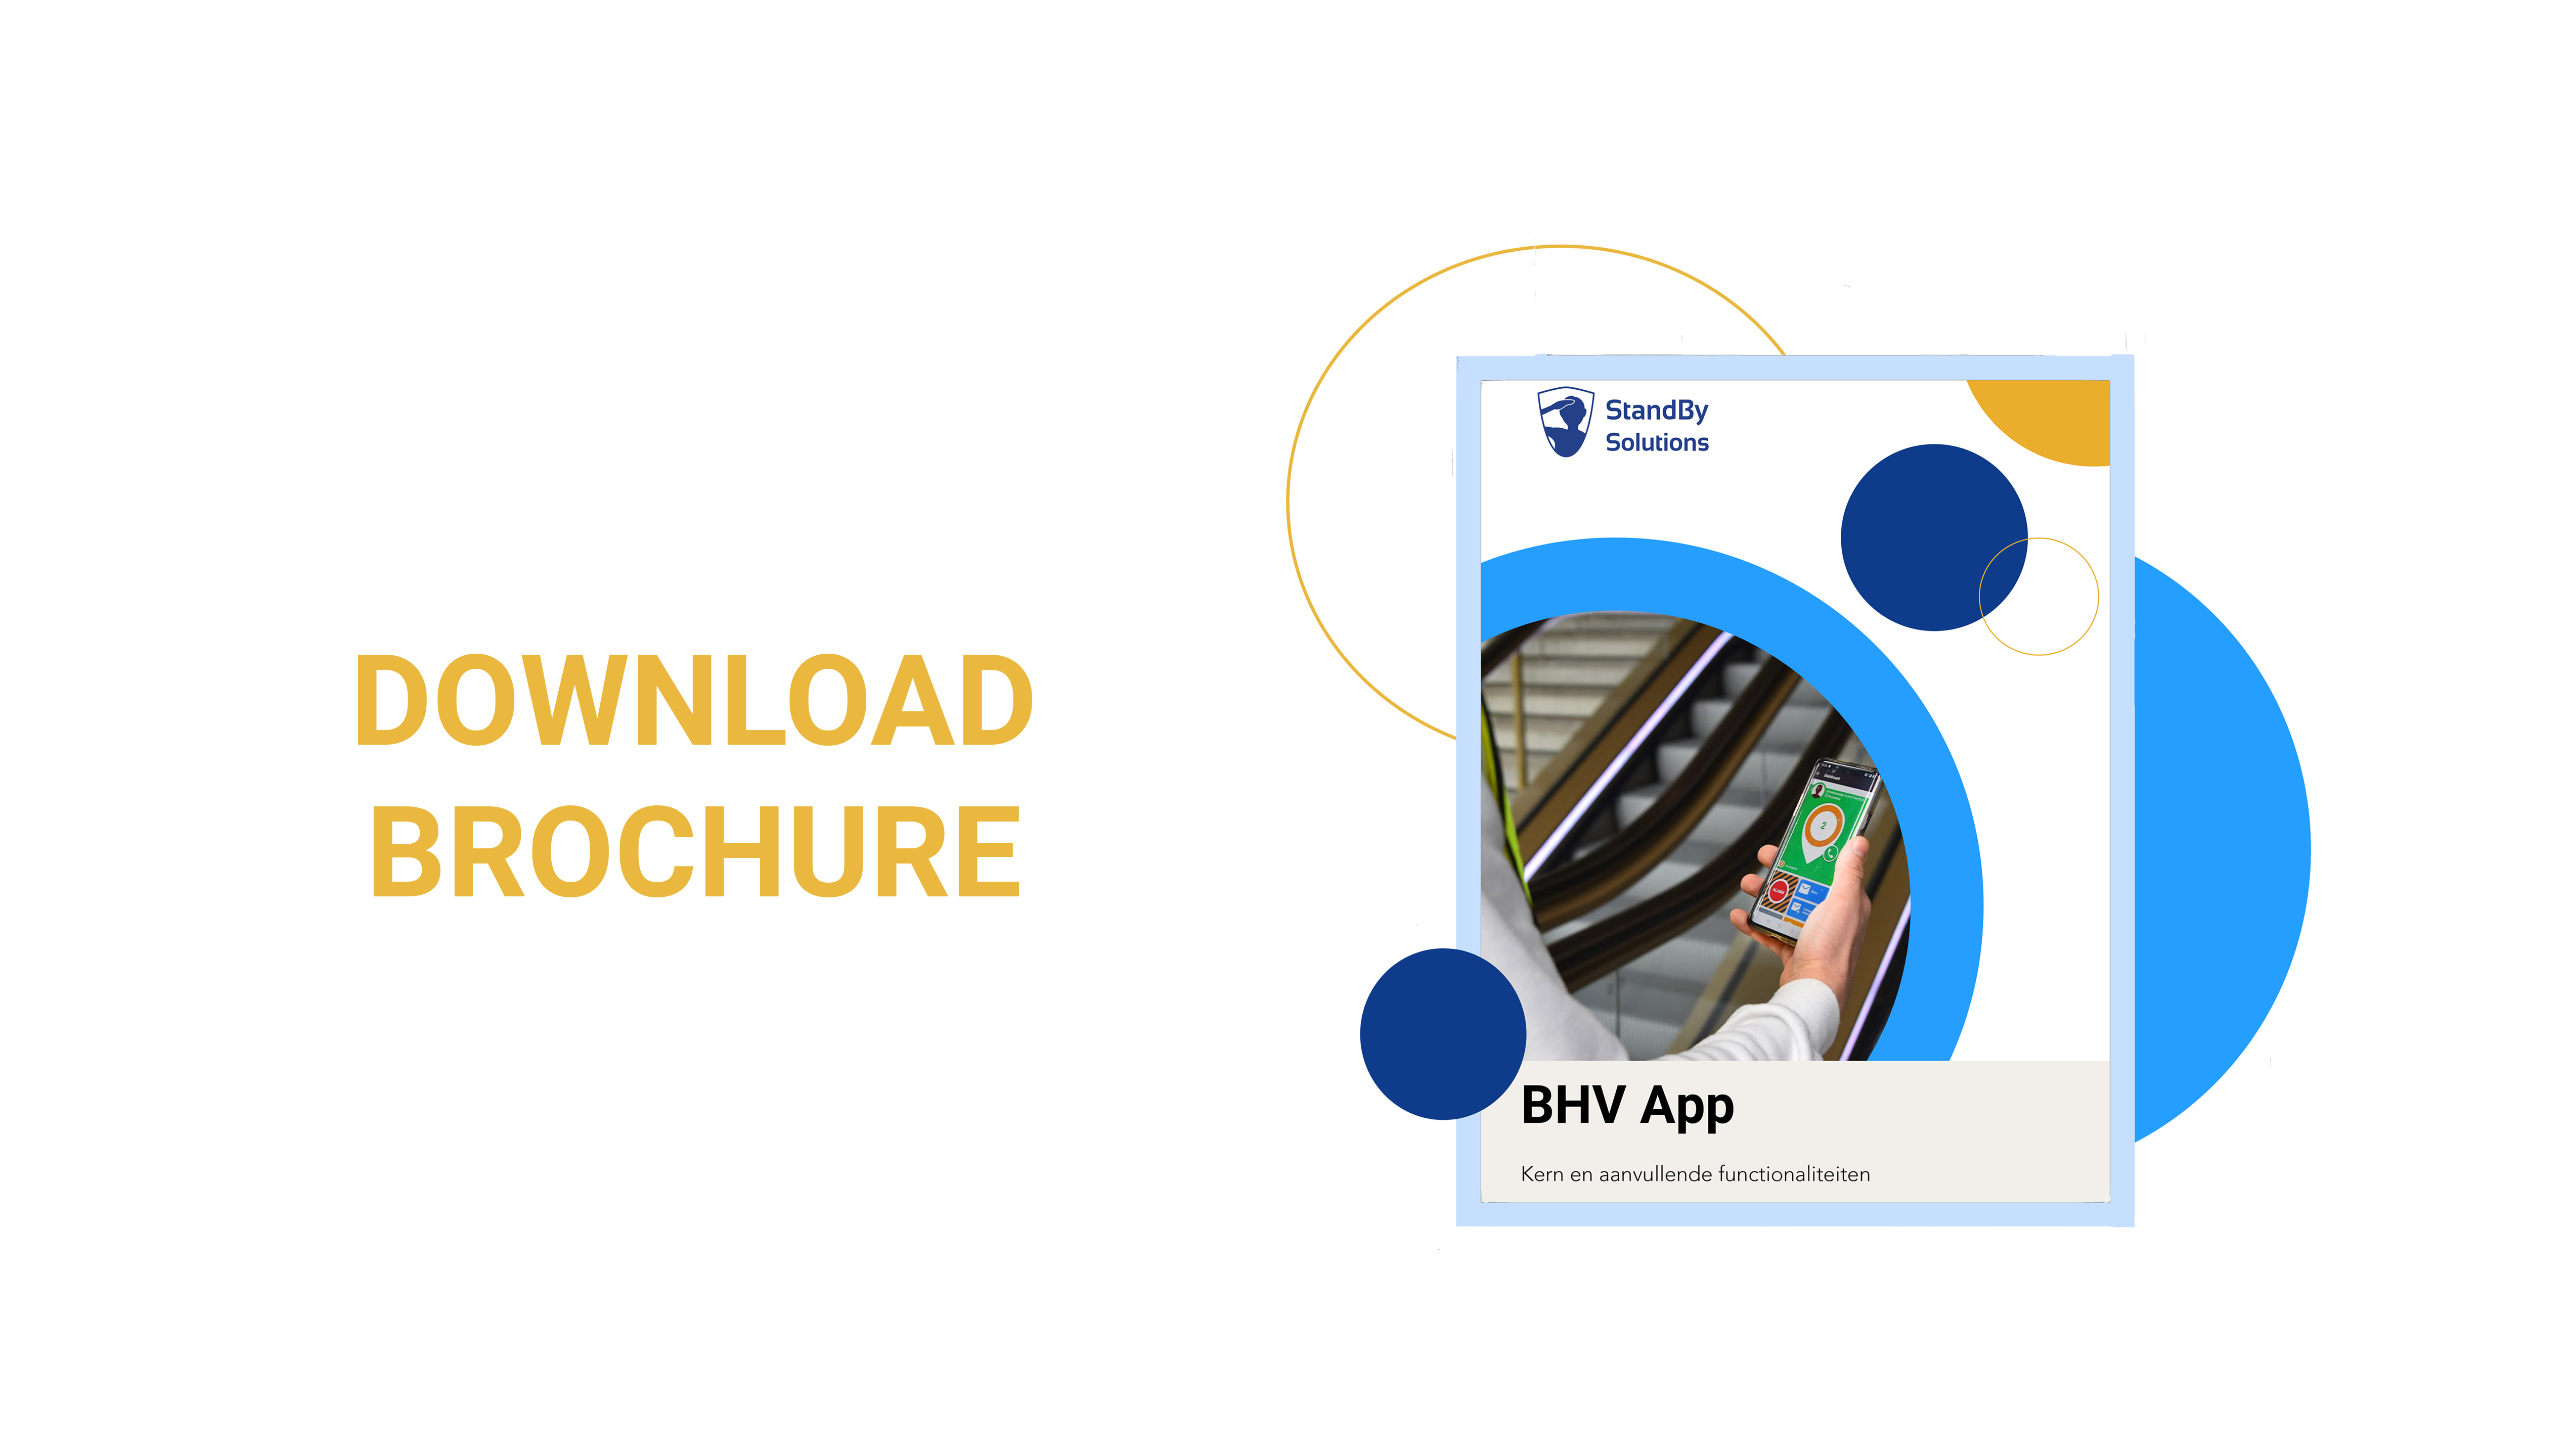 de-BHV-app-download-brochure